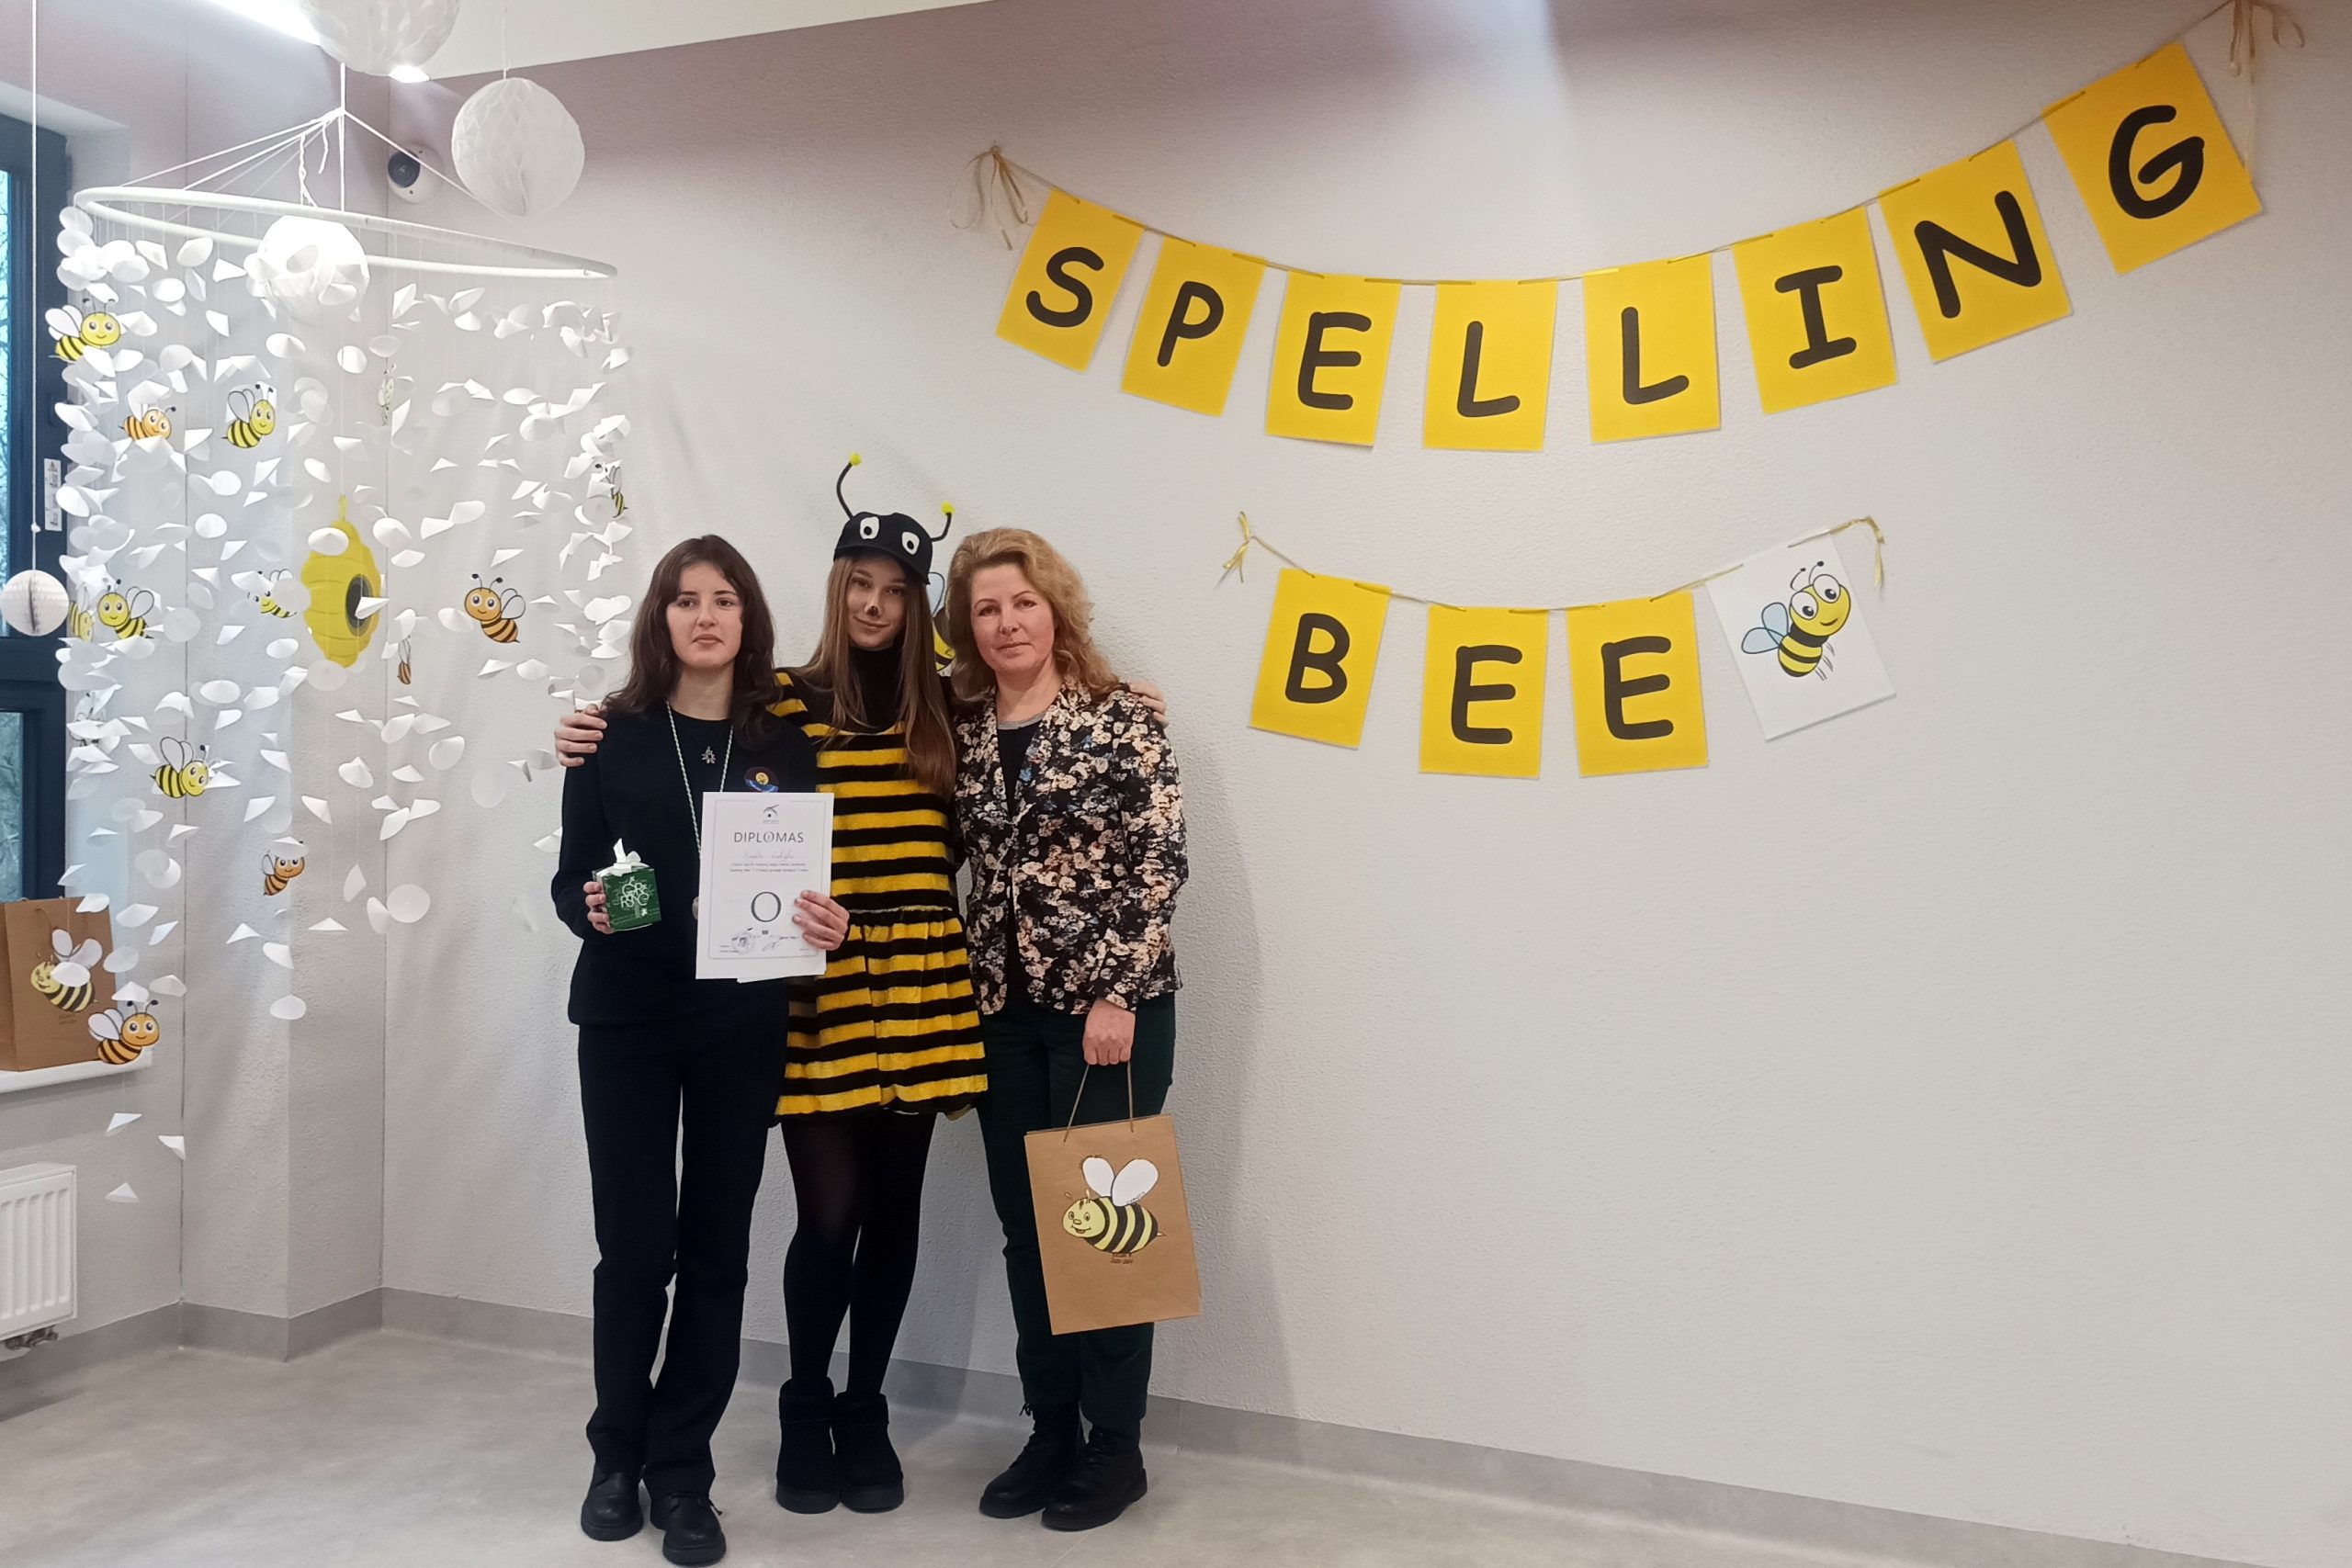 Dalyvavo anglų kalbos konkurse Spelling Bee